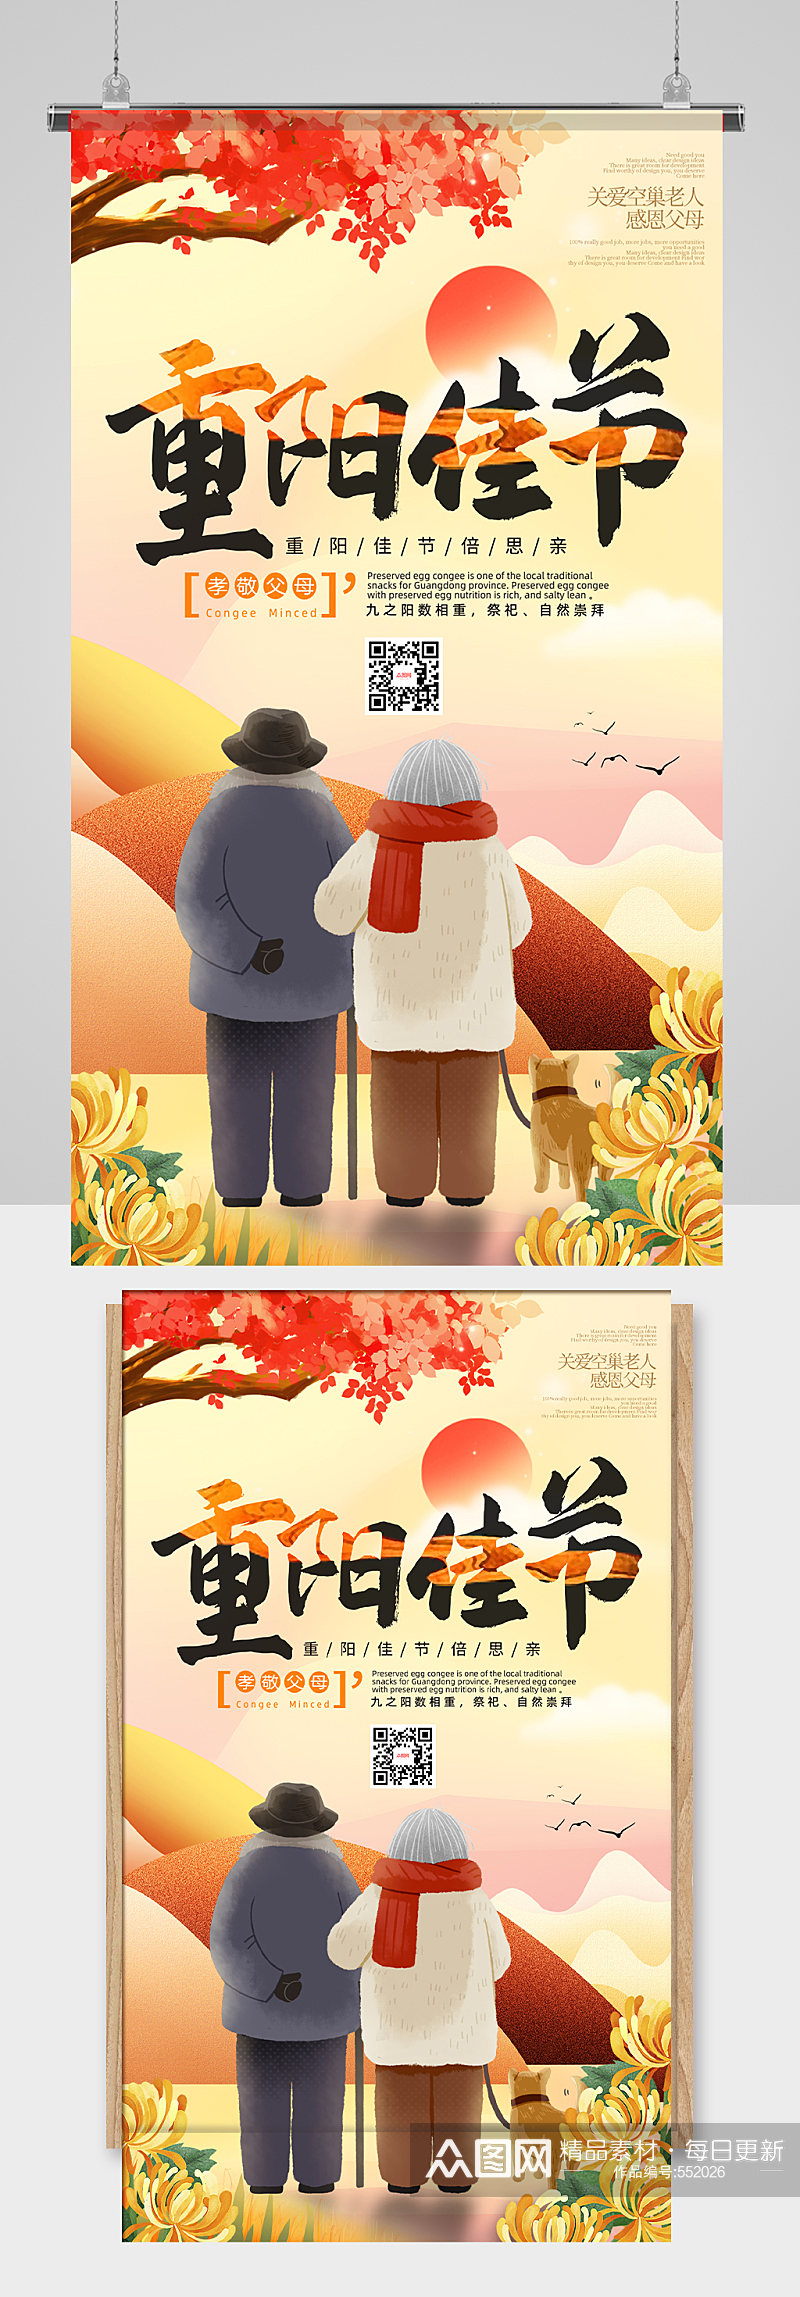 插画卡通九九重阳节宣传海报设计图片素材